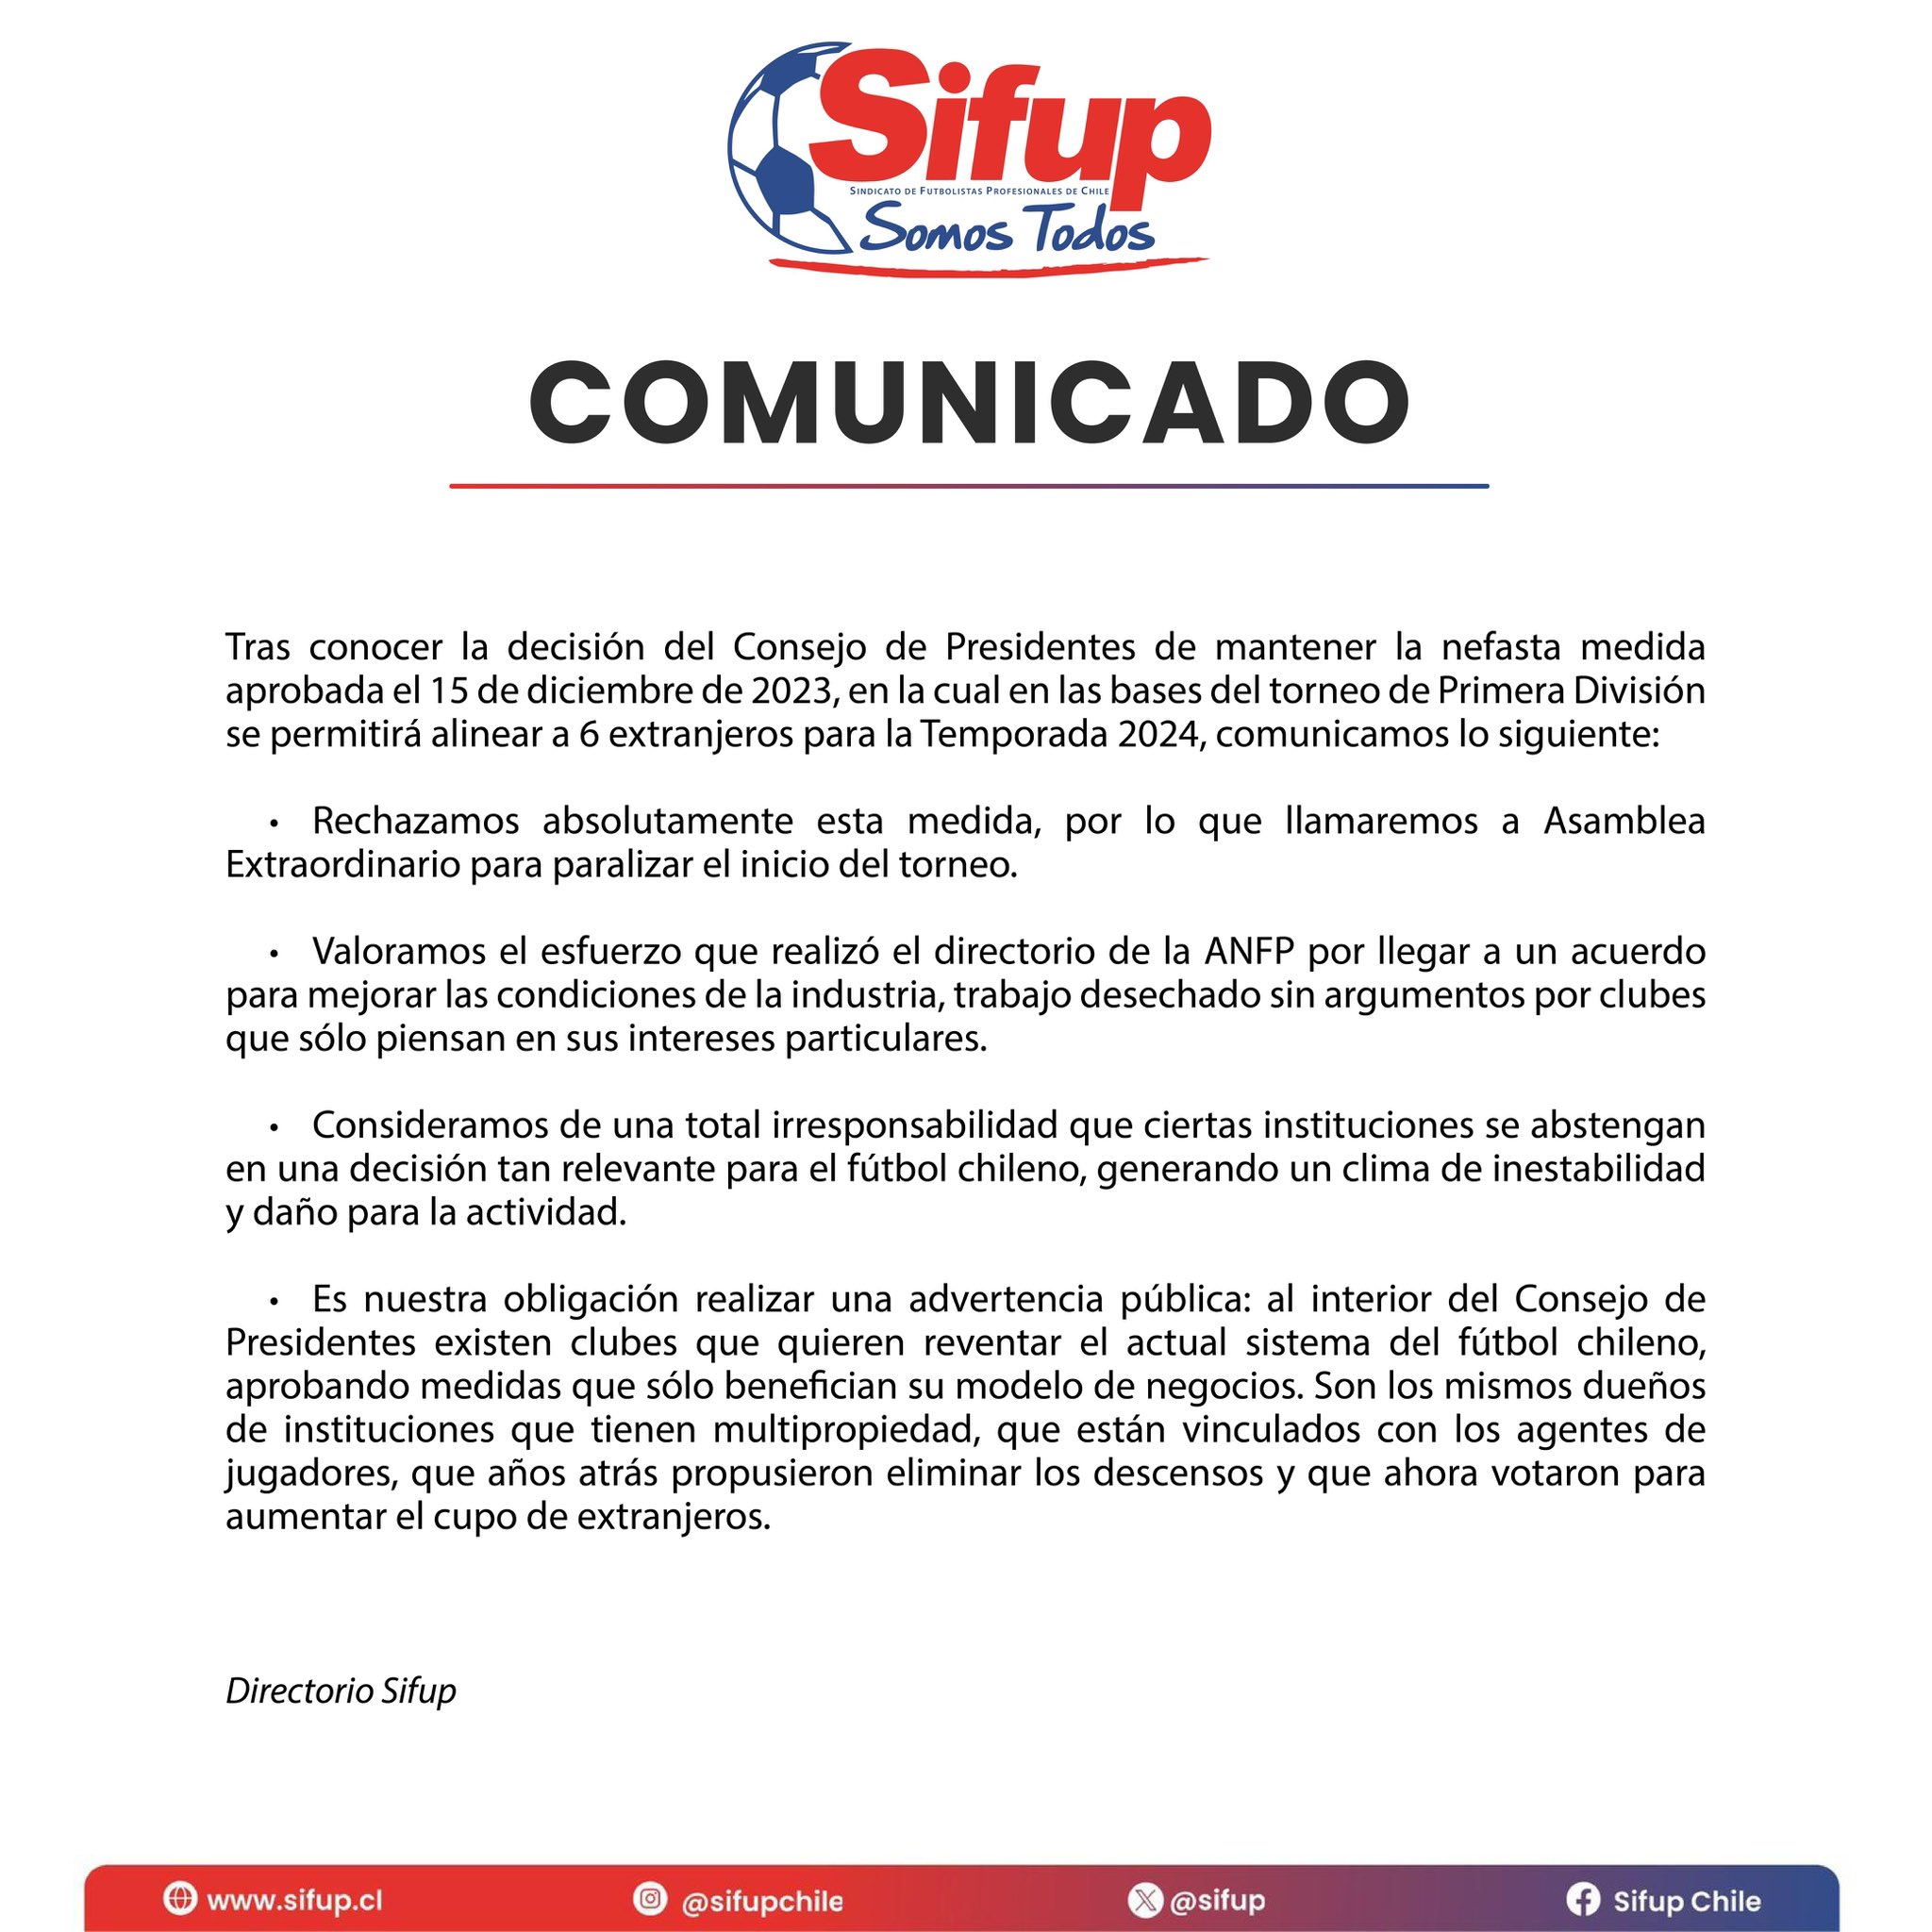 SIFUP llamará a paro en el fútbol chileno por la mantención de seis extranjeros en cancha / SIFUP